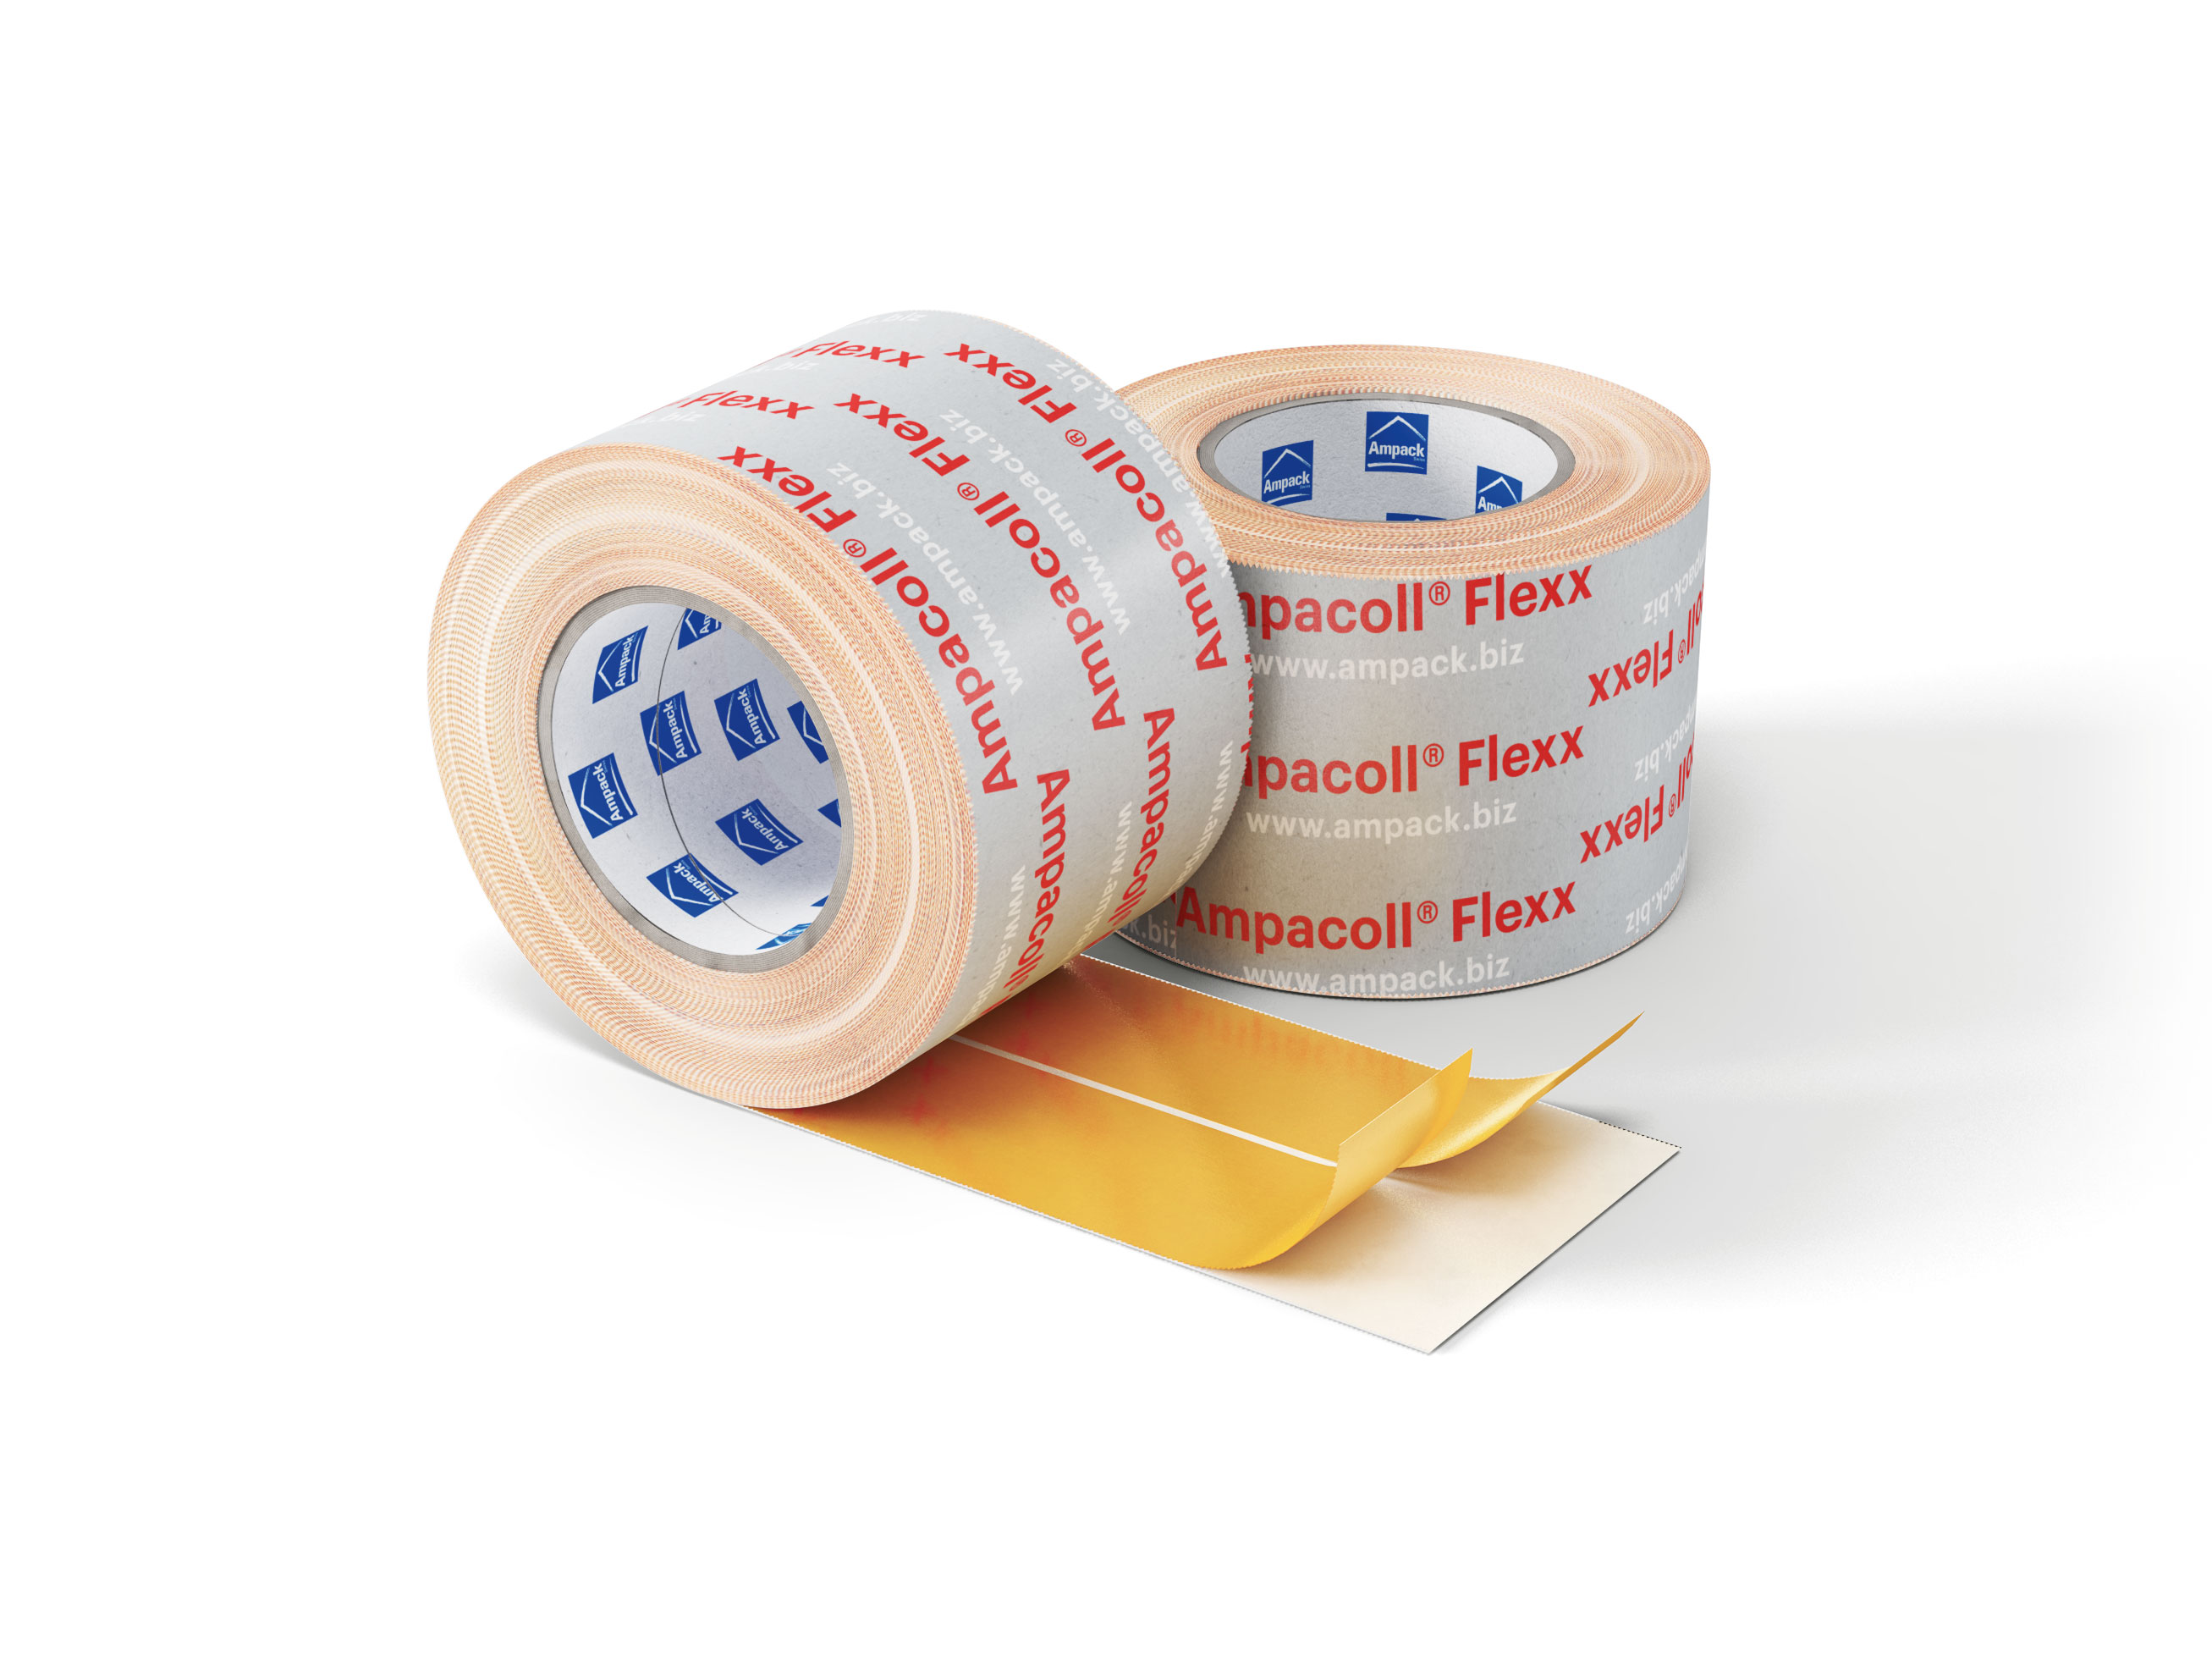 Produktfoto: Ampacoll Flexx pro, Acrylklebeband für innen und aussen